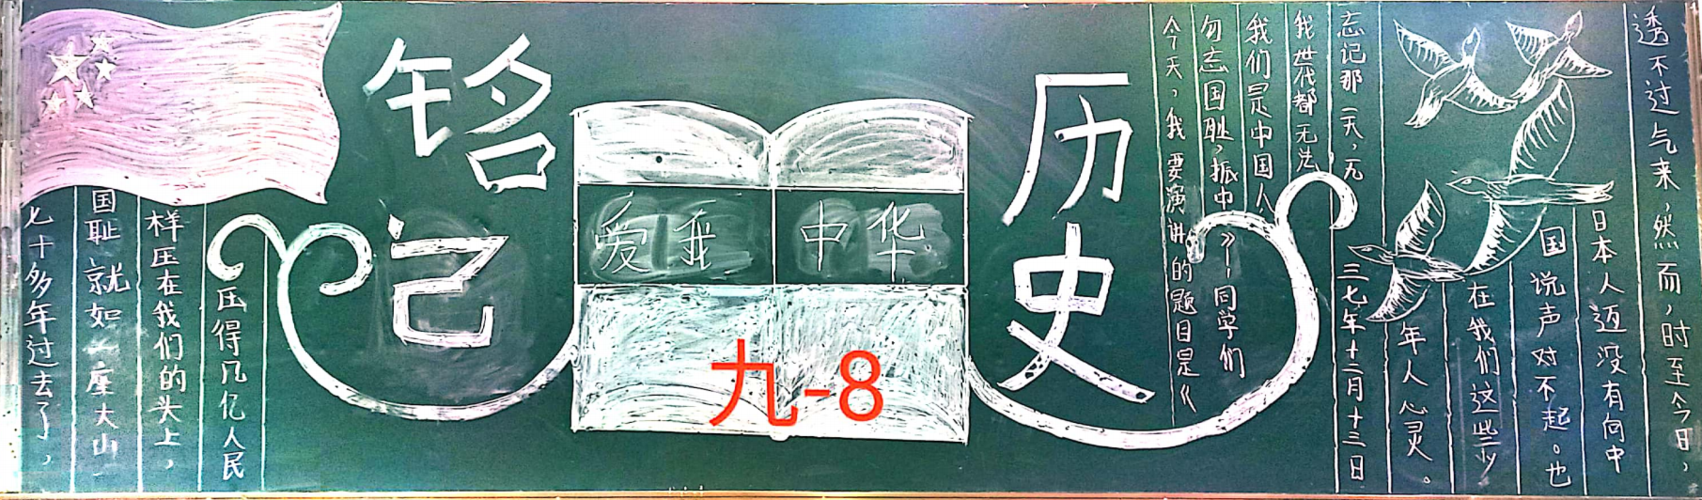 铭记历史勿忘国耻纪念南京大屠杀九年级黑板报展示